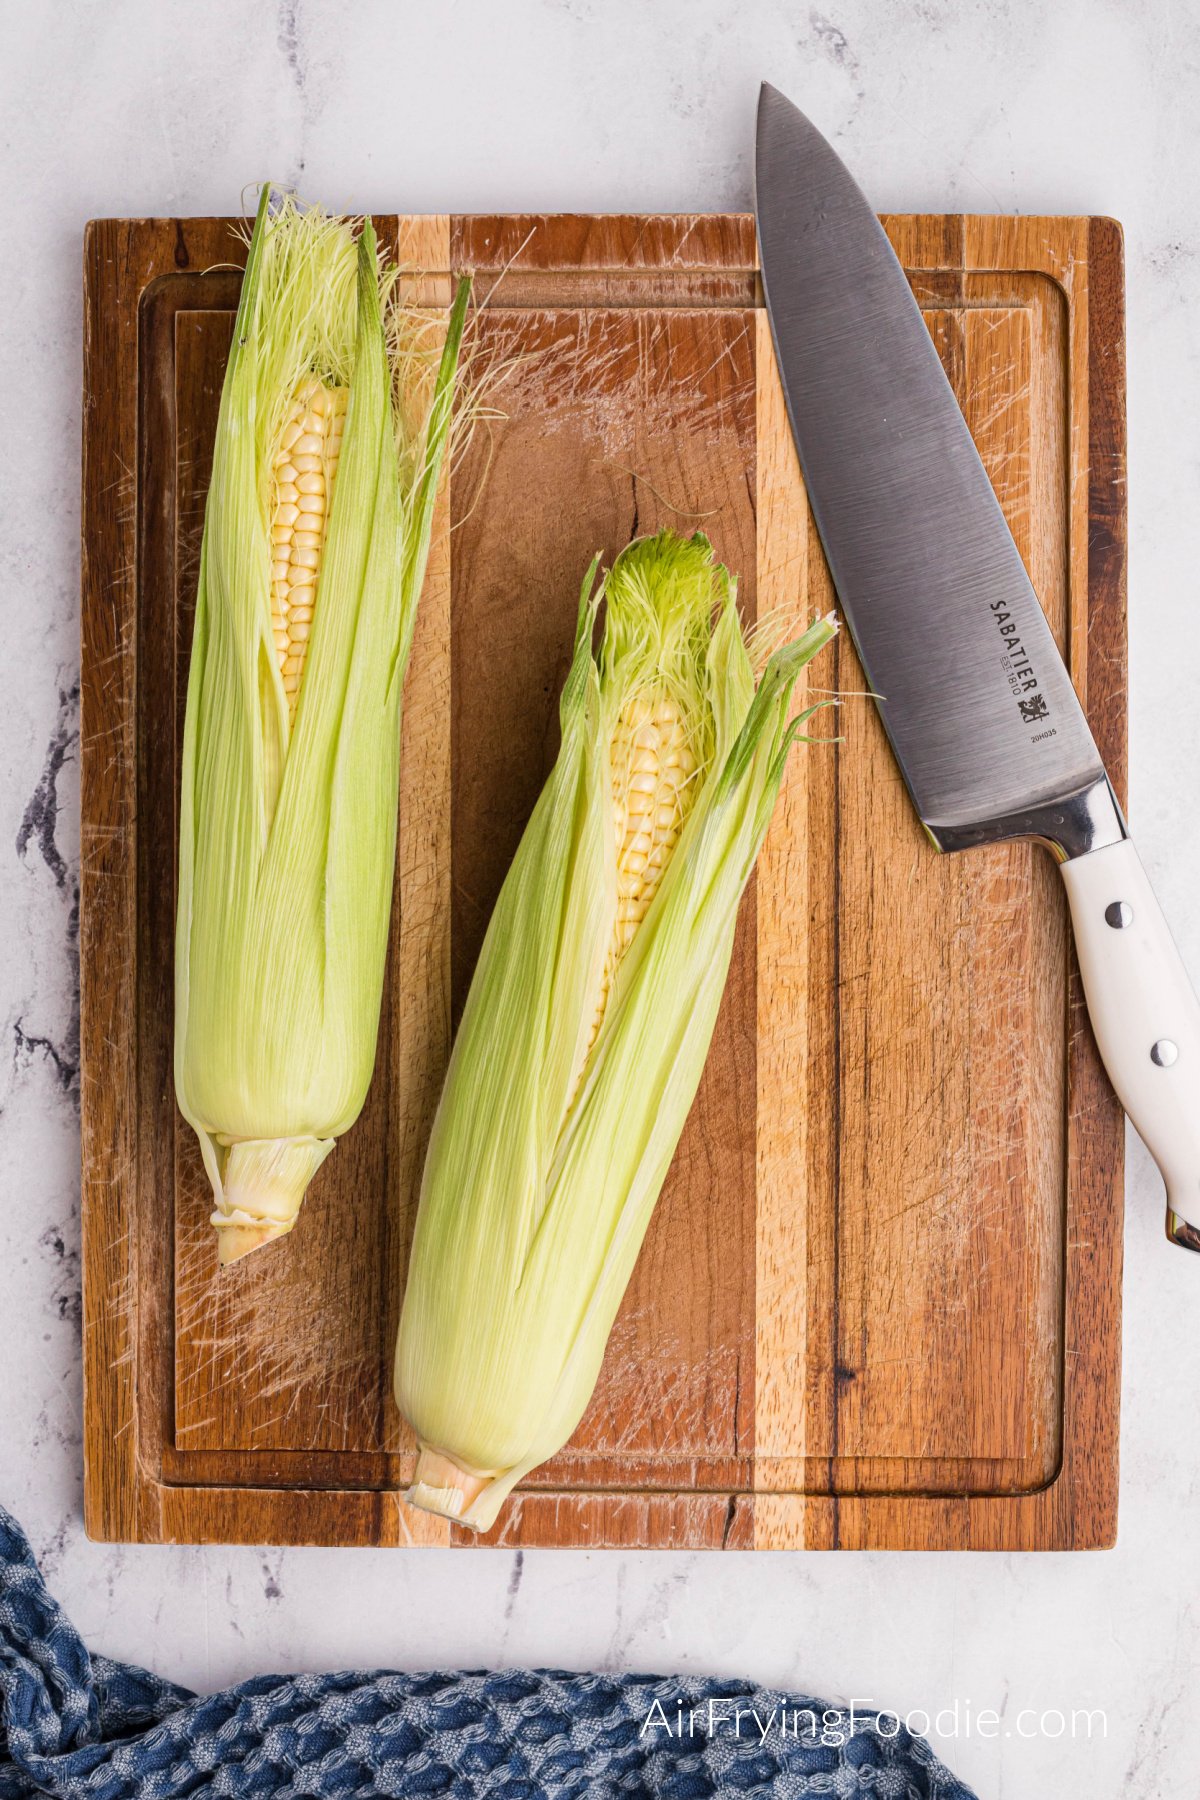 Corn on a cutting board.